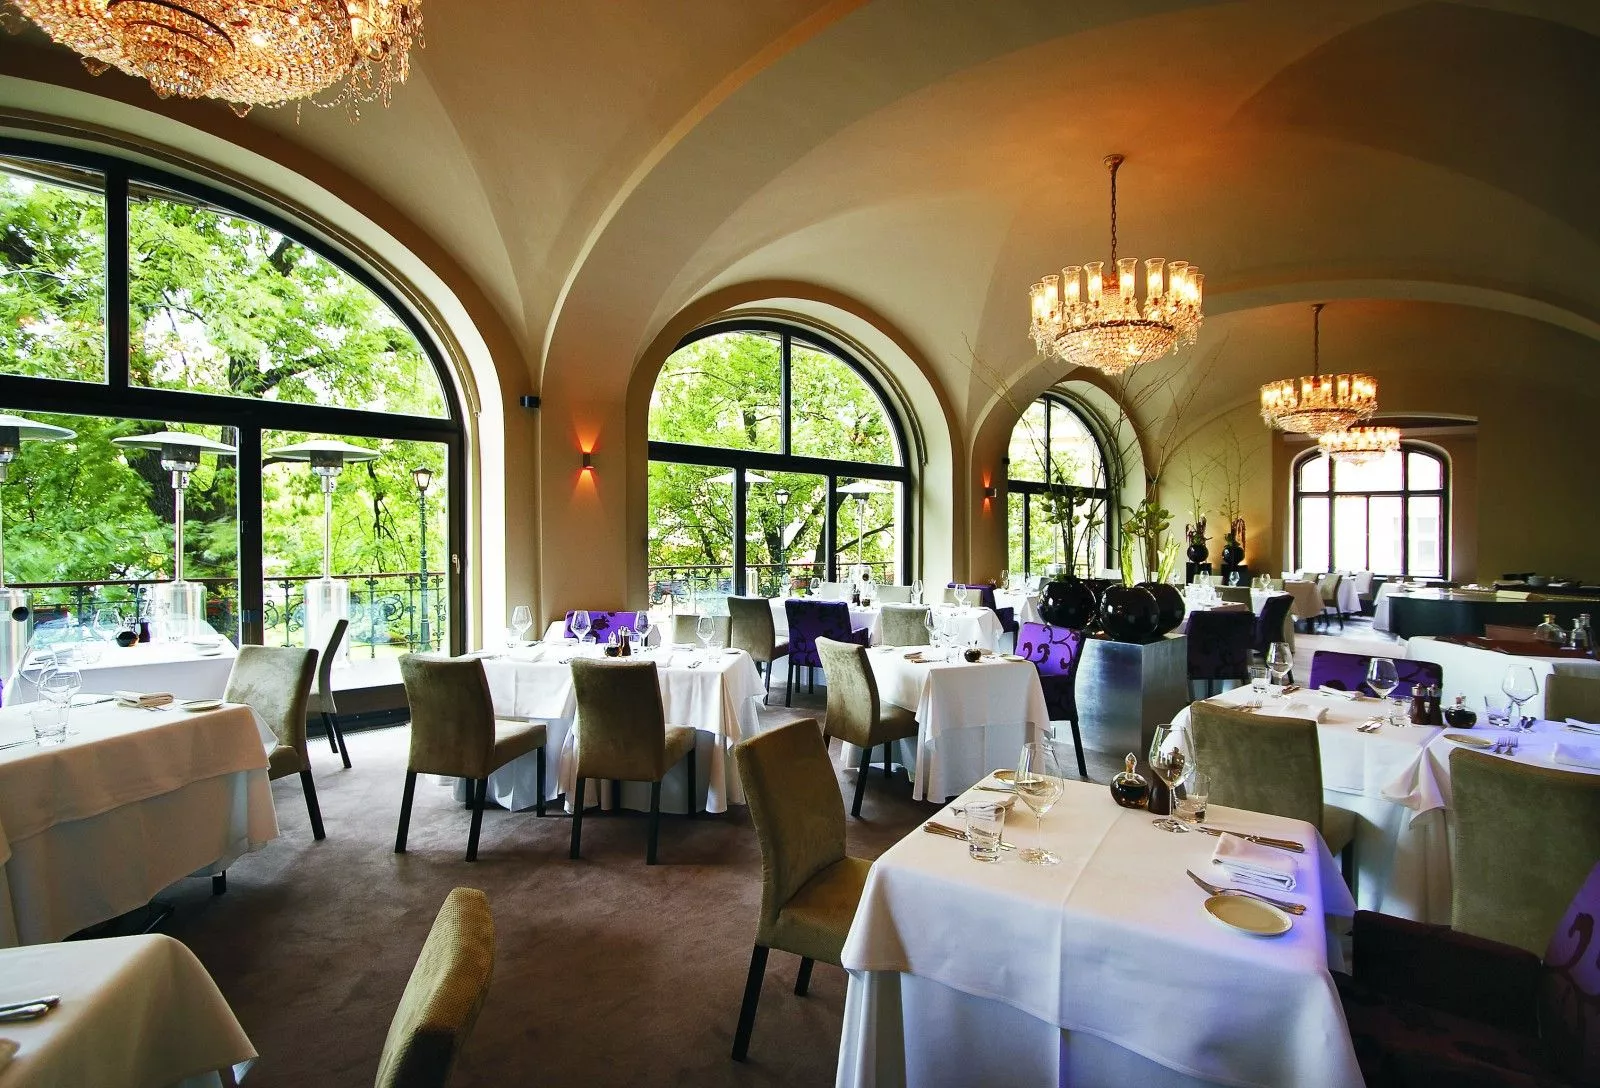 Restaurace Bellevue in Czech Republic, Europe | Restaurants - Rated 3.9